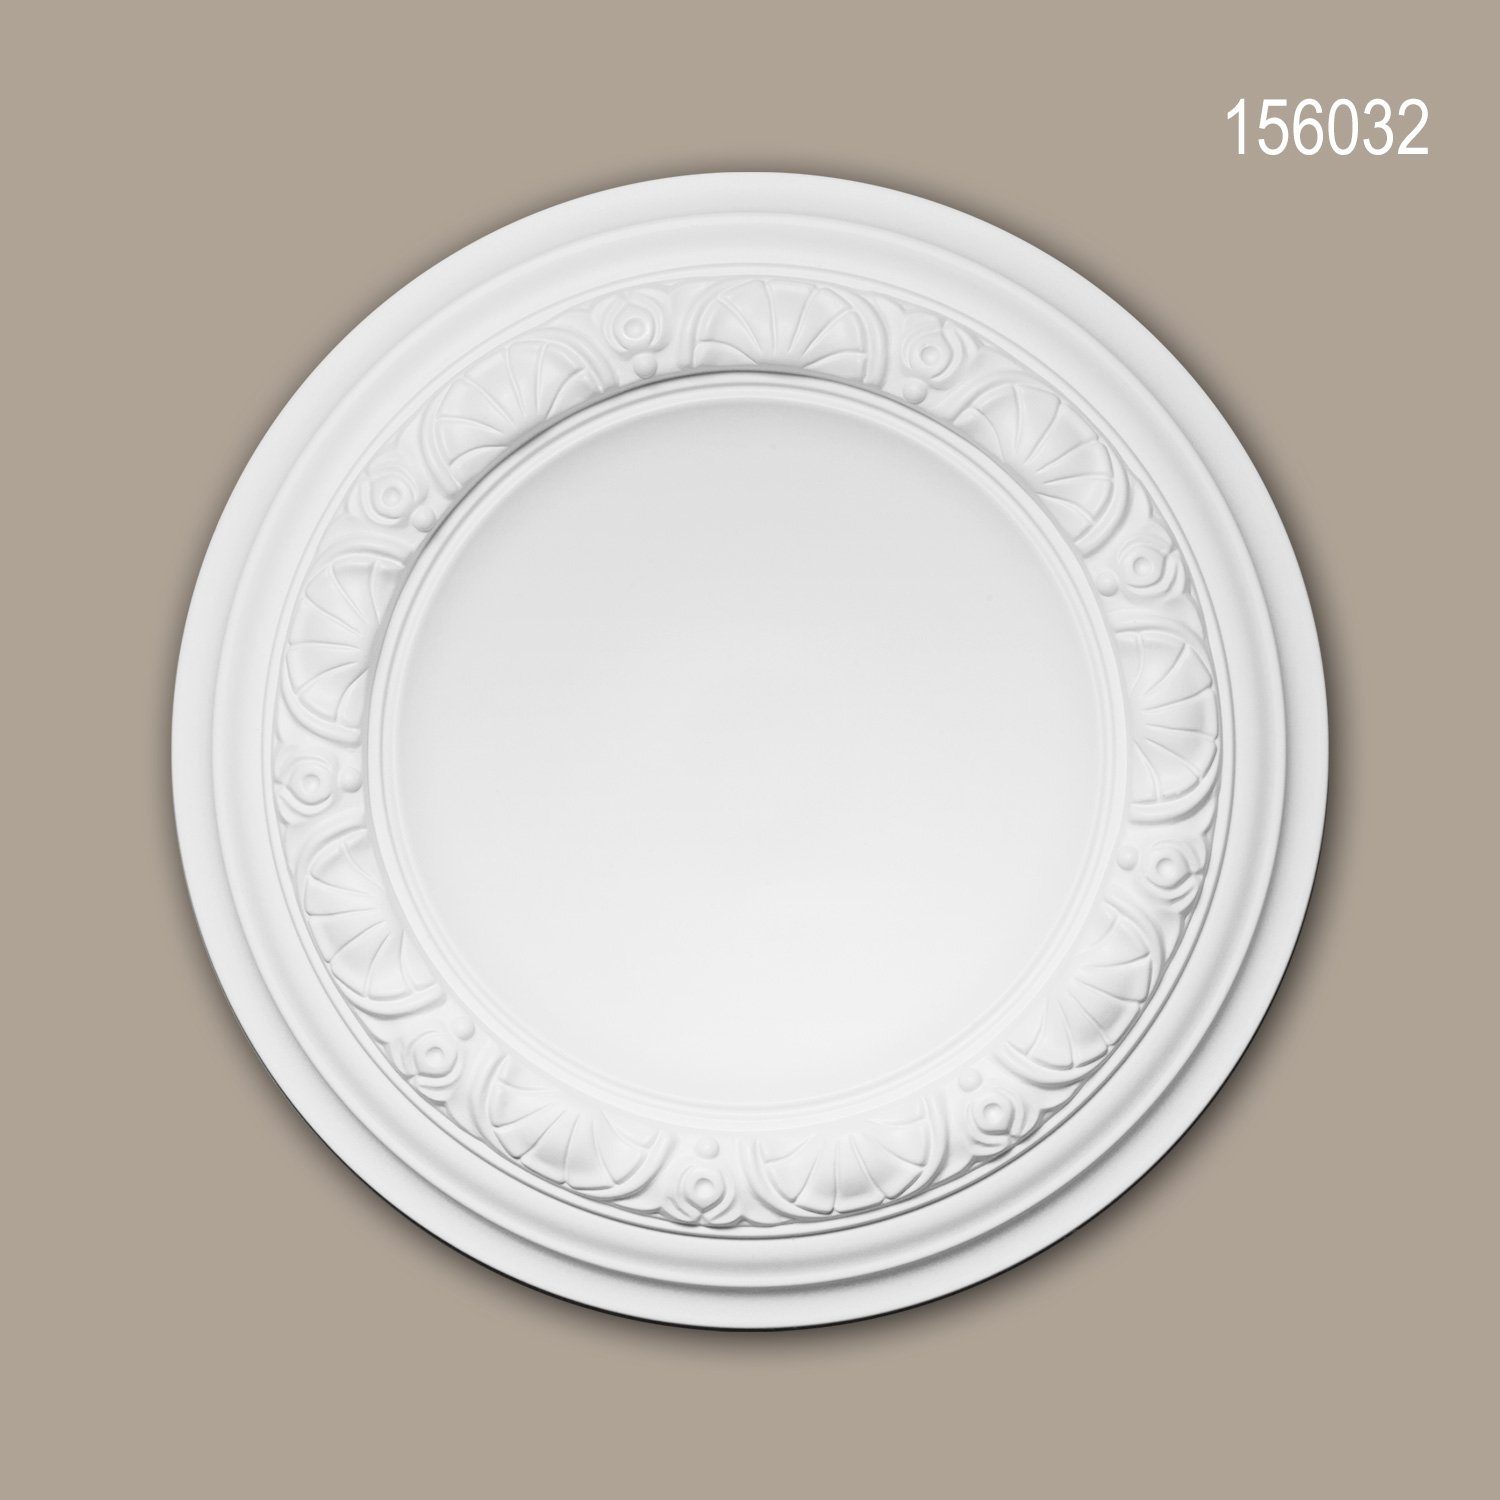 Durchmesser 32 Deckenrosette, Stuckrosette, Profhome Stil: Neo-Renaissance Deckenelement, weiß, Zierelement, (Rosette, Medallion, 1 St., cm), 156032 vorgrundiert, Decken-Rosette